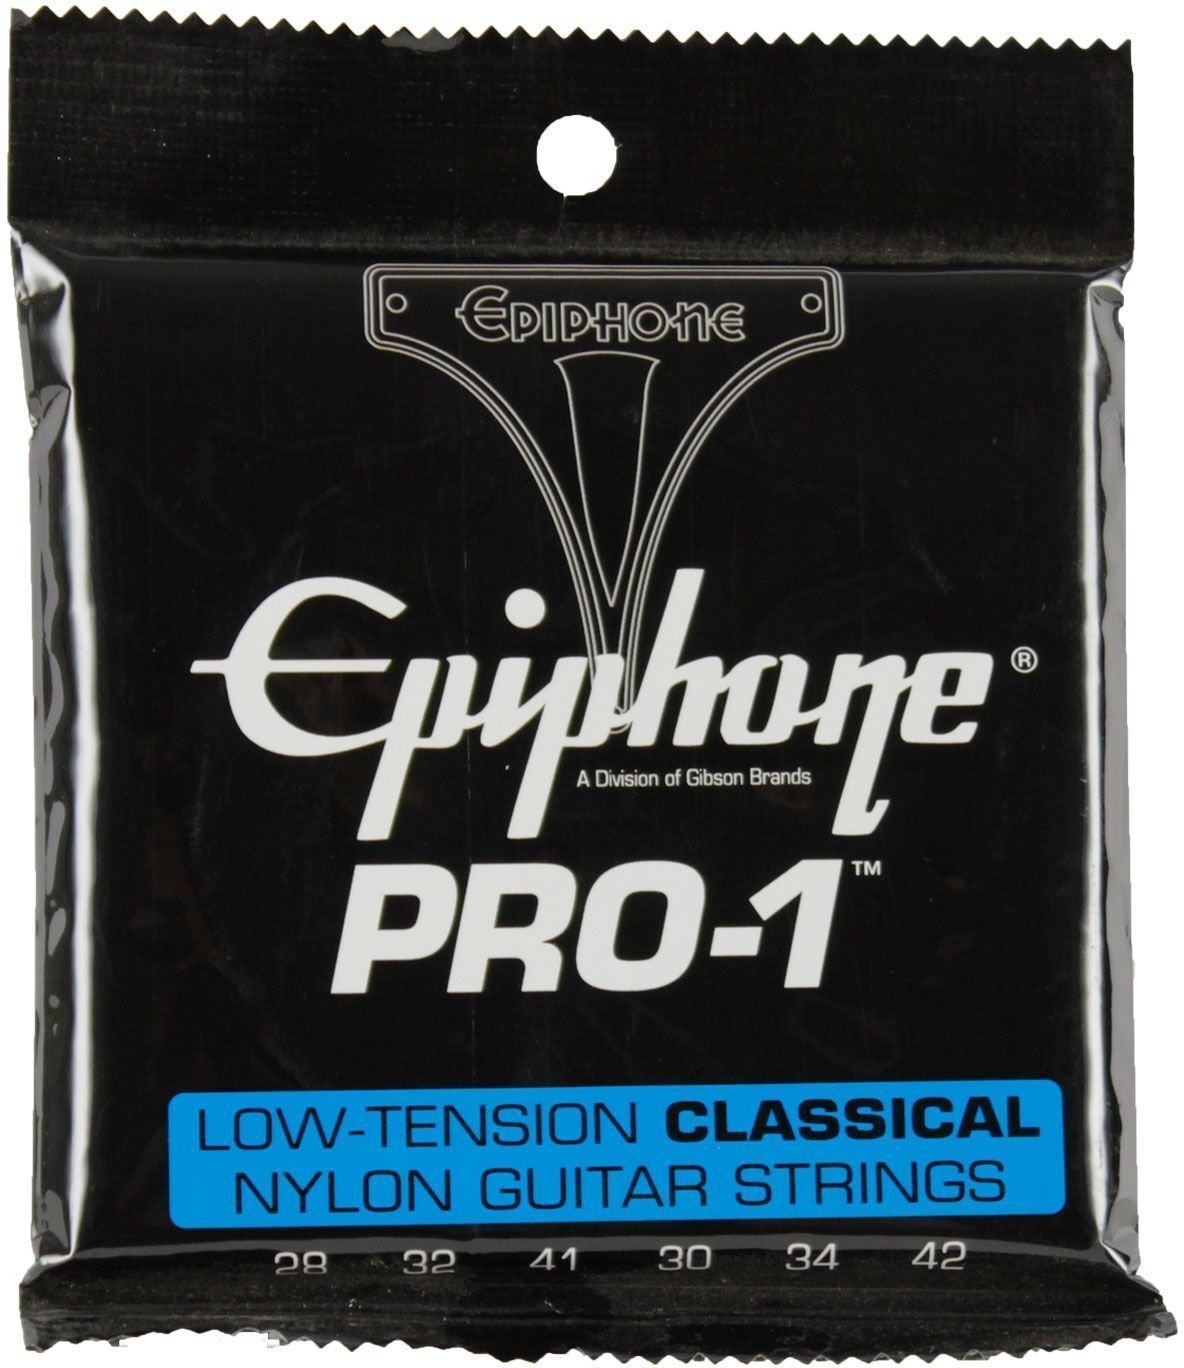 Νάιλον Χορδές για Κλασική Κιθάρα Epiphone Pro-1 Ultra-Light Classical Strings